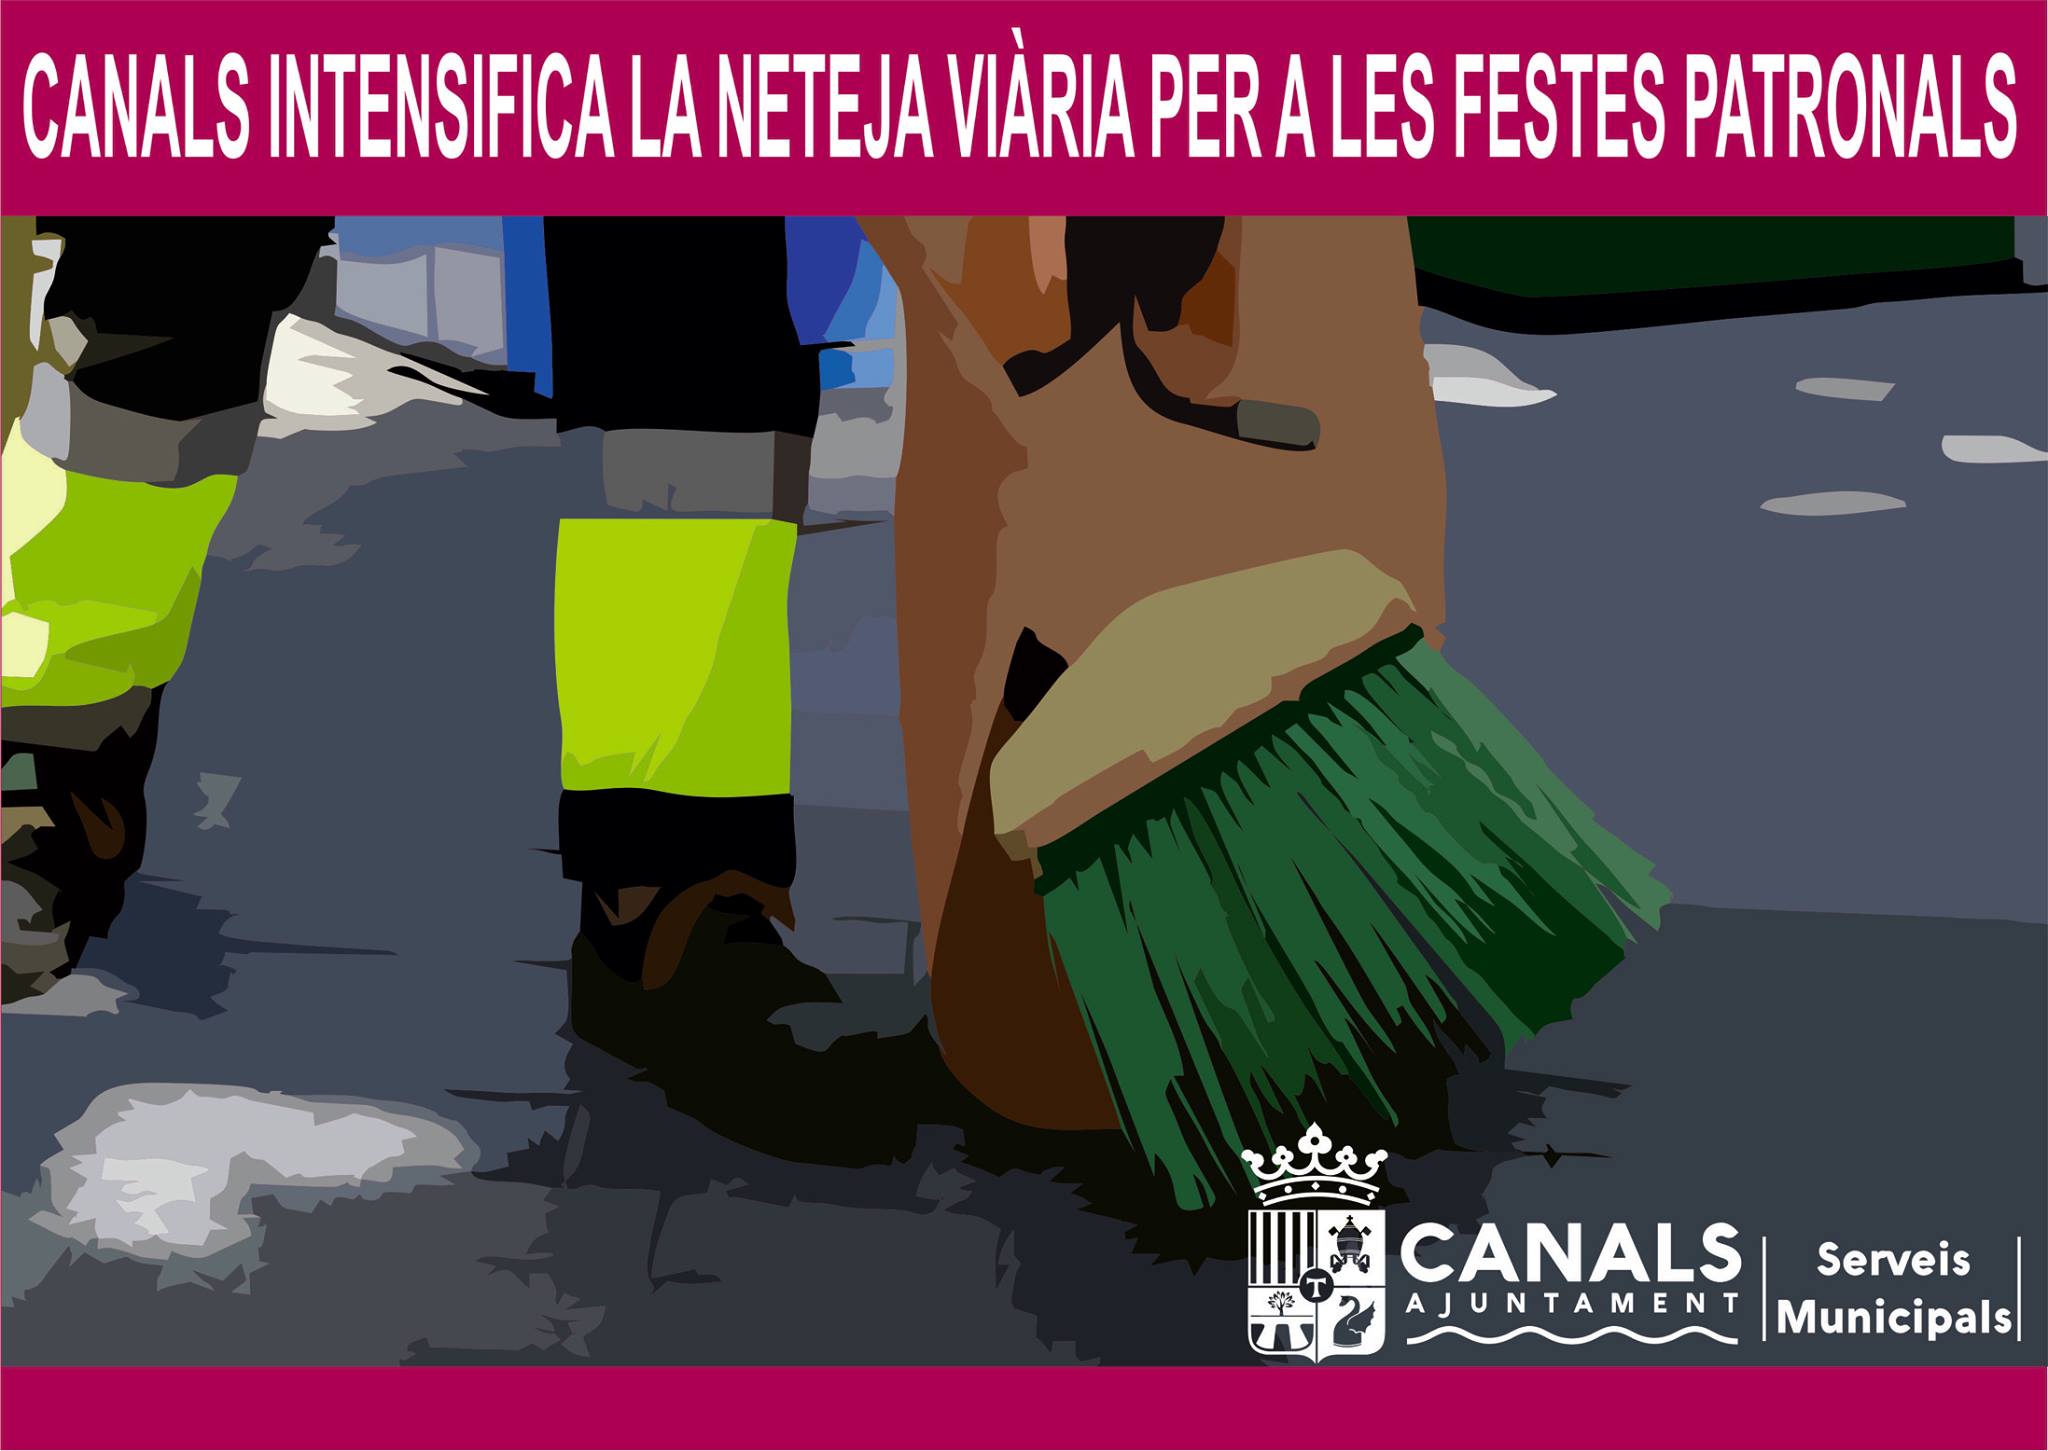 2017.01.14 Canals intensifica la neteja viària en festes. Ajuntament de Canals.